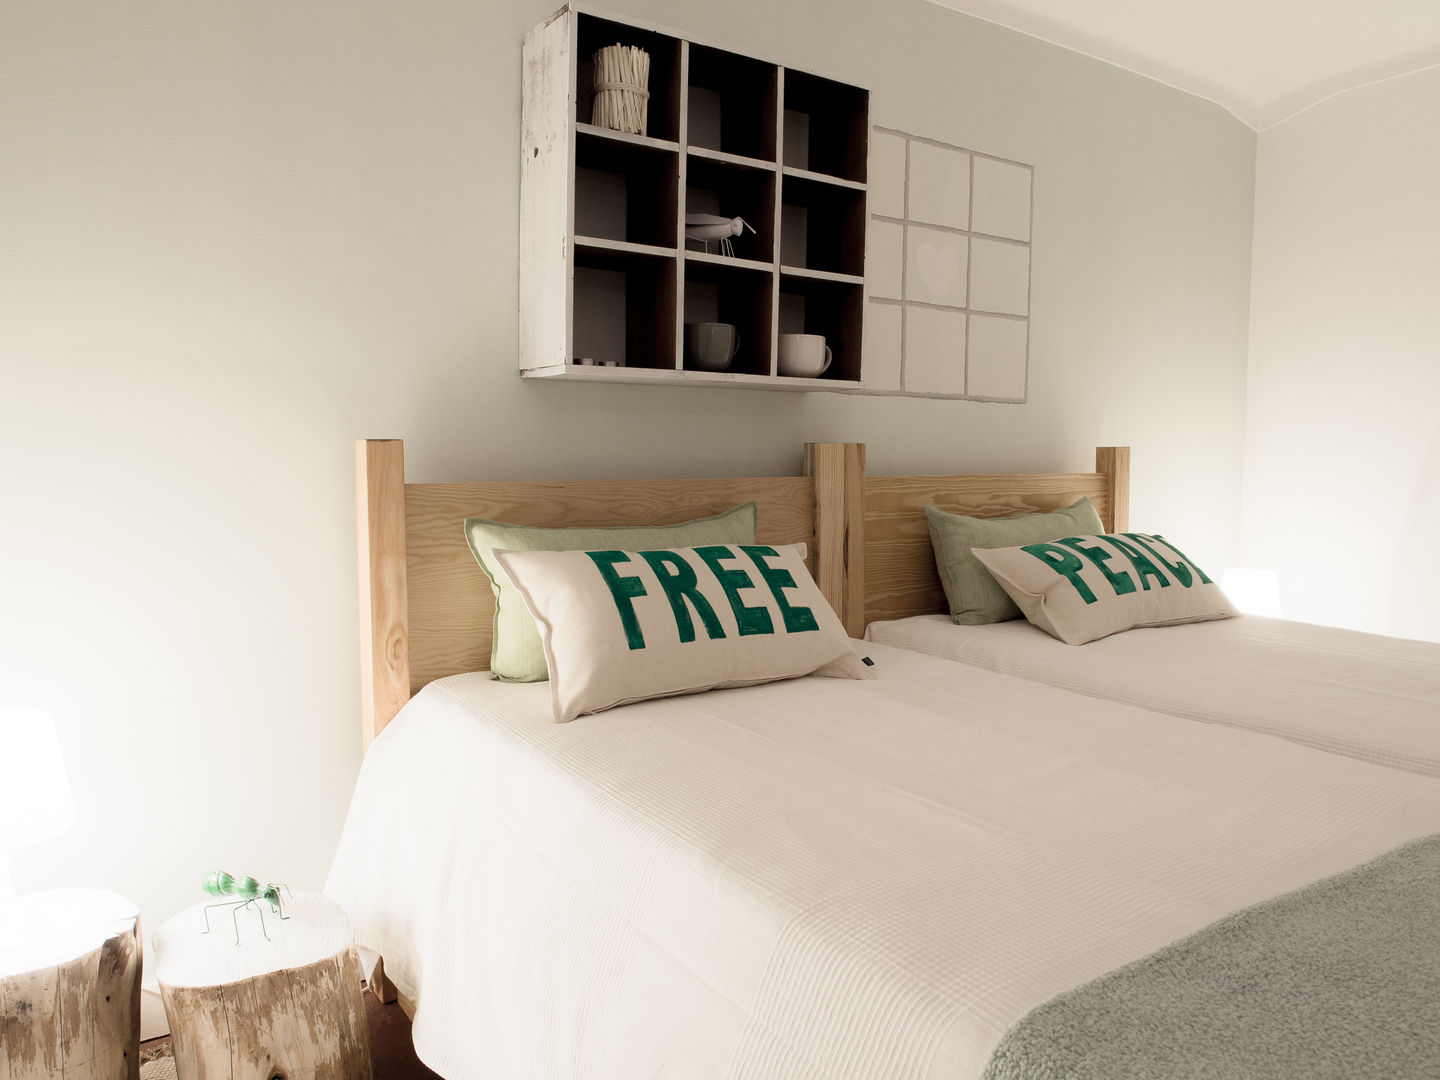 NiceWay Cascais Hostel - Life Bedroom - Cascais, MUDA Home Design MUDA Home Design Commercial spaces Hotels